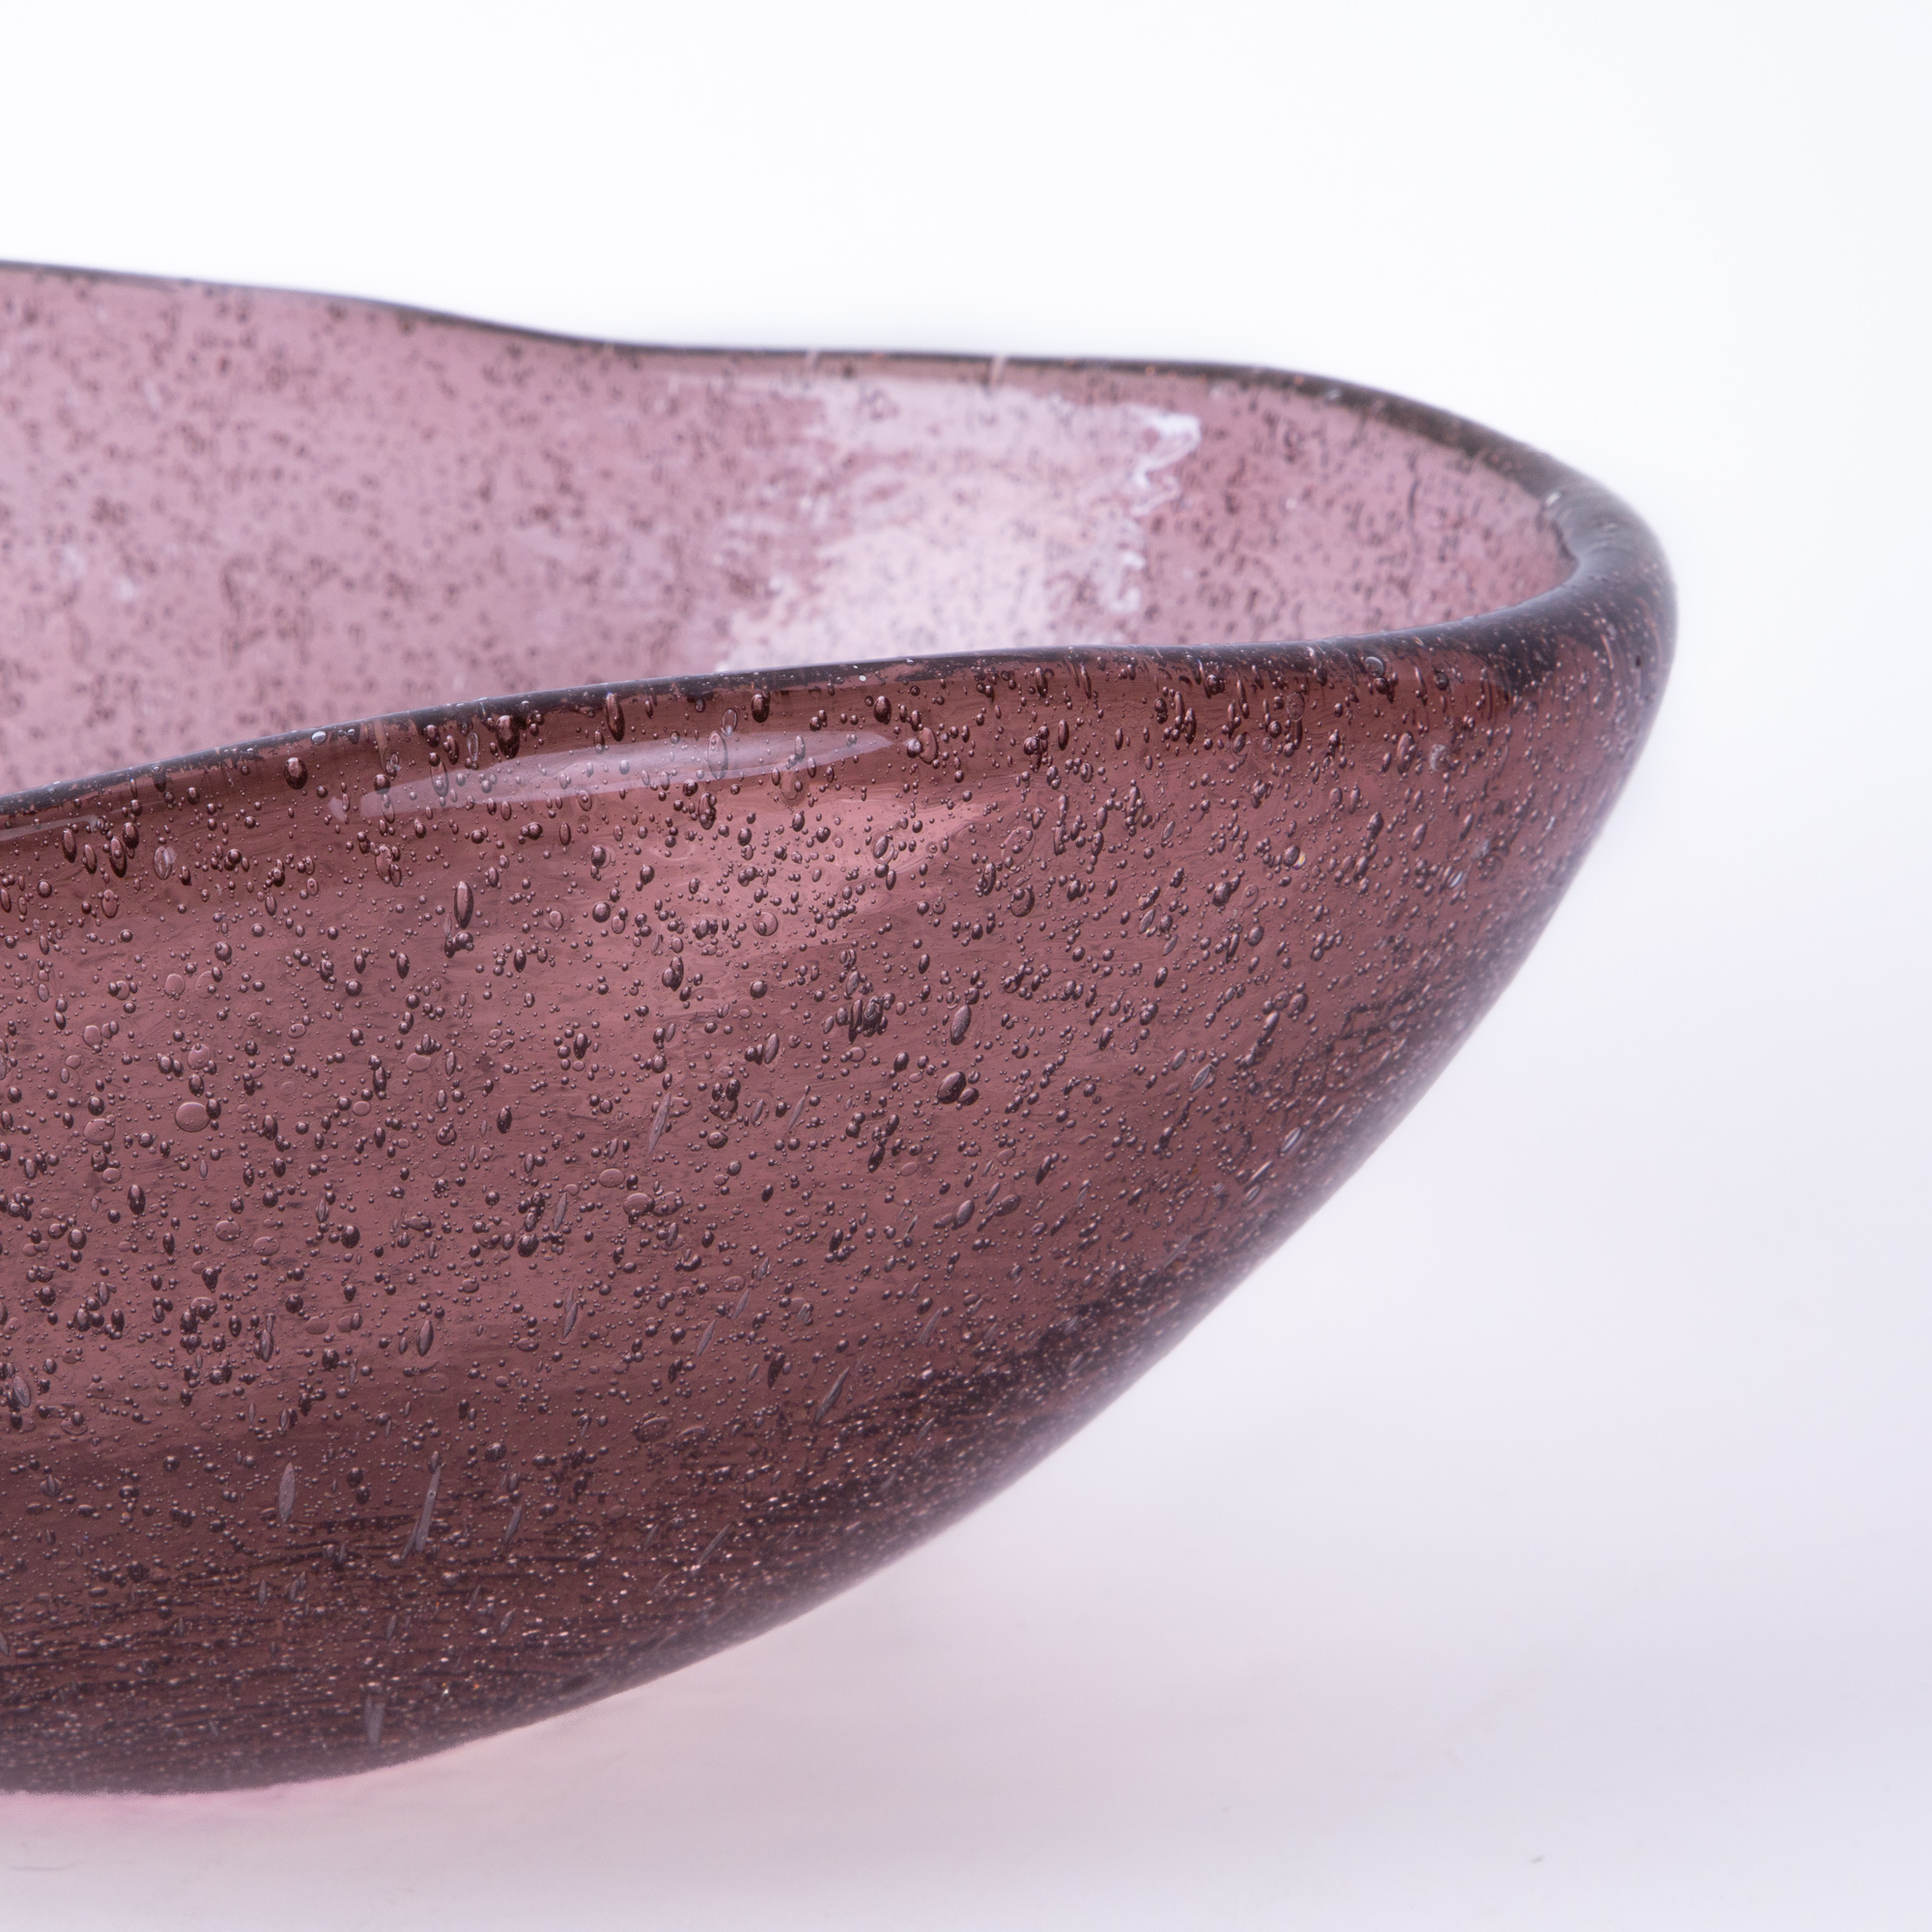 Dew Lilac Glass Bowl